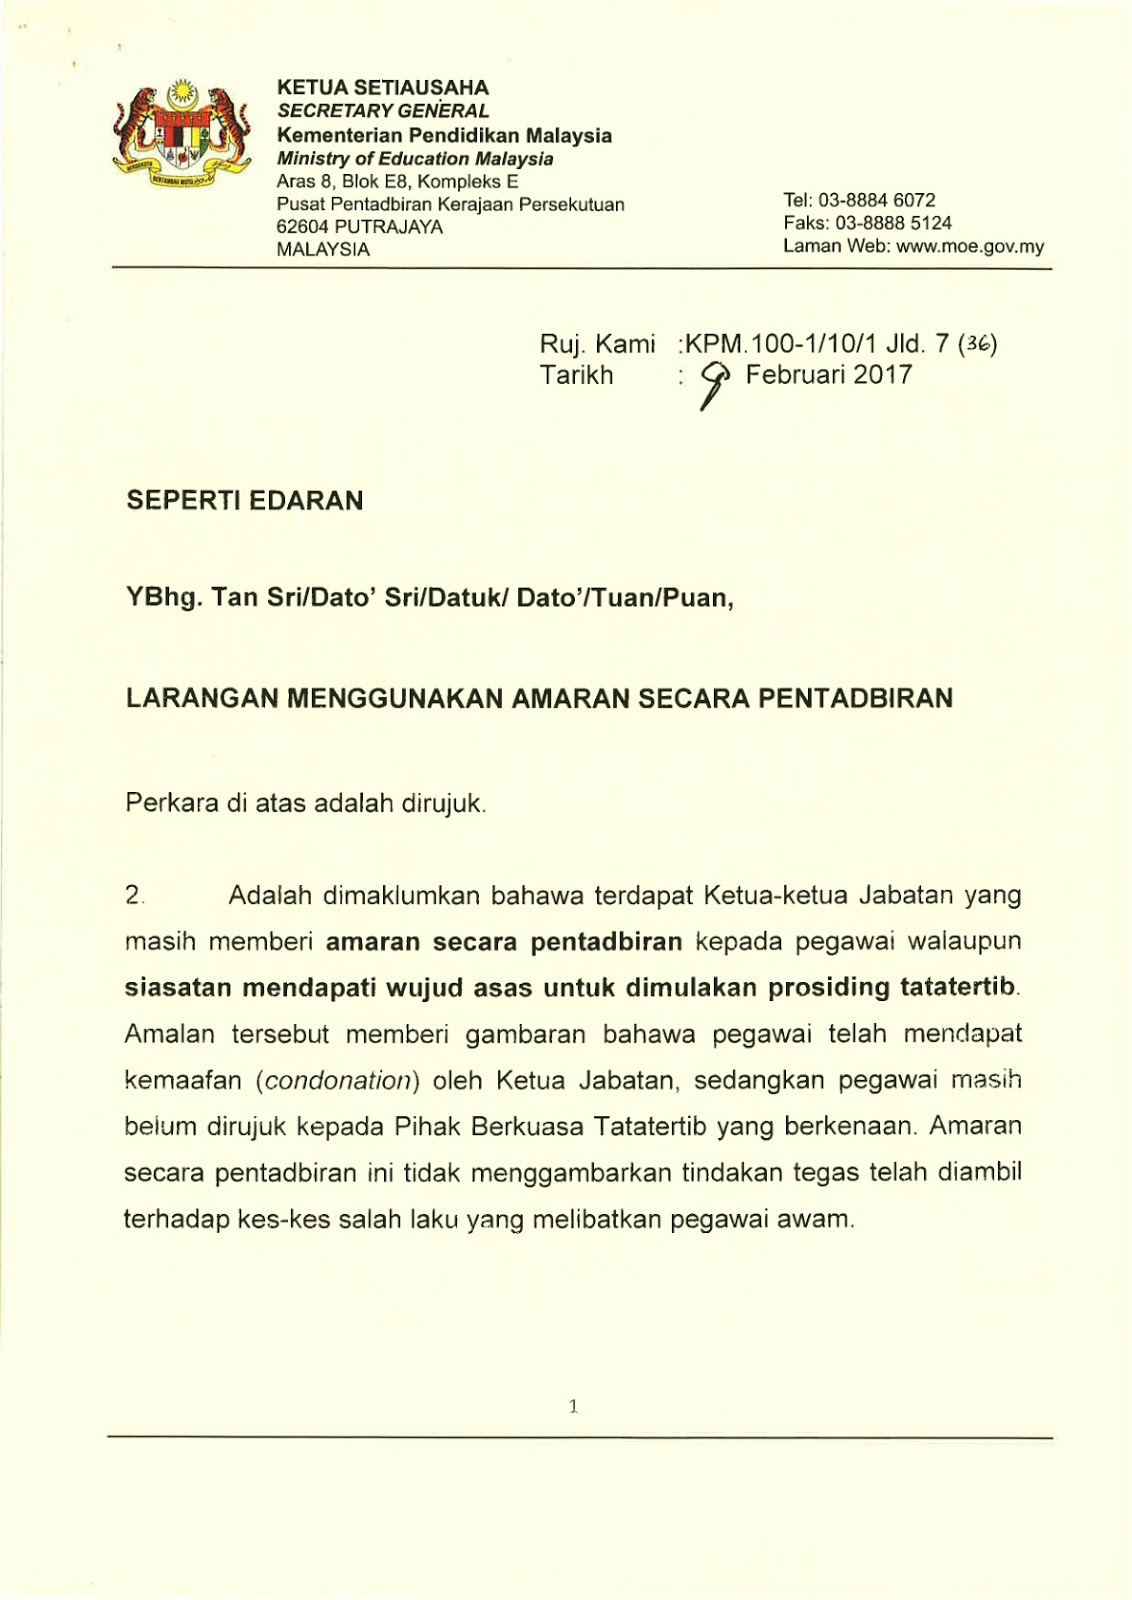 Contoh Ayat Surat Rasmi Untuk Sultan Selangor